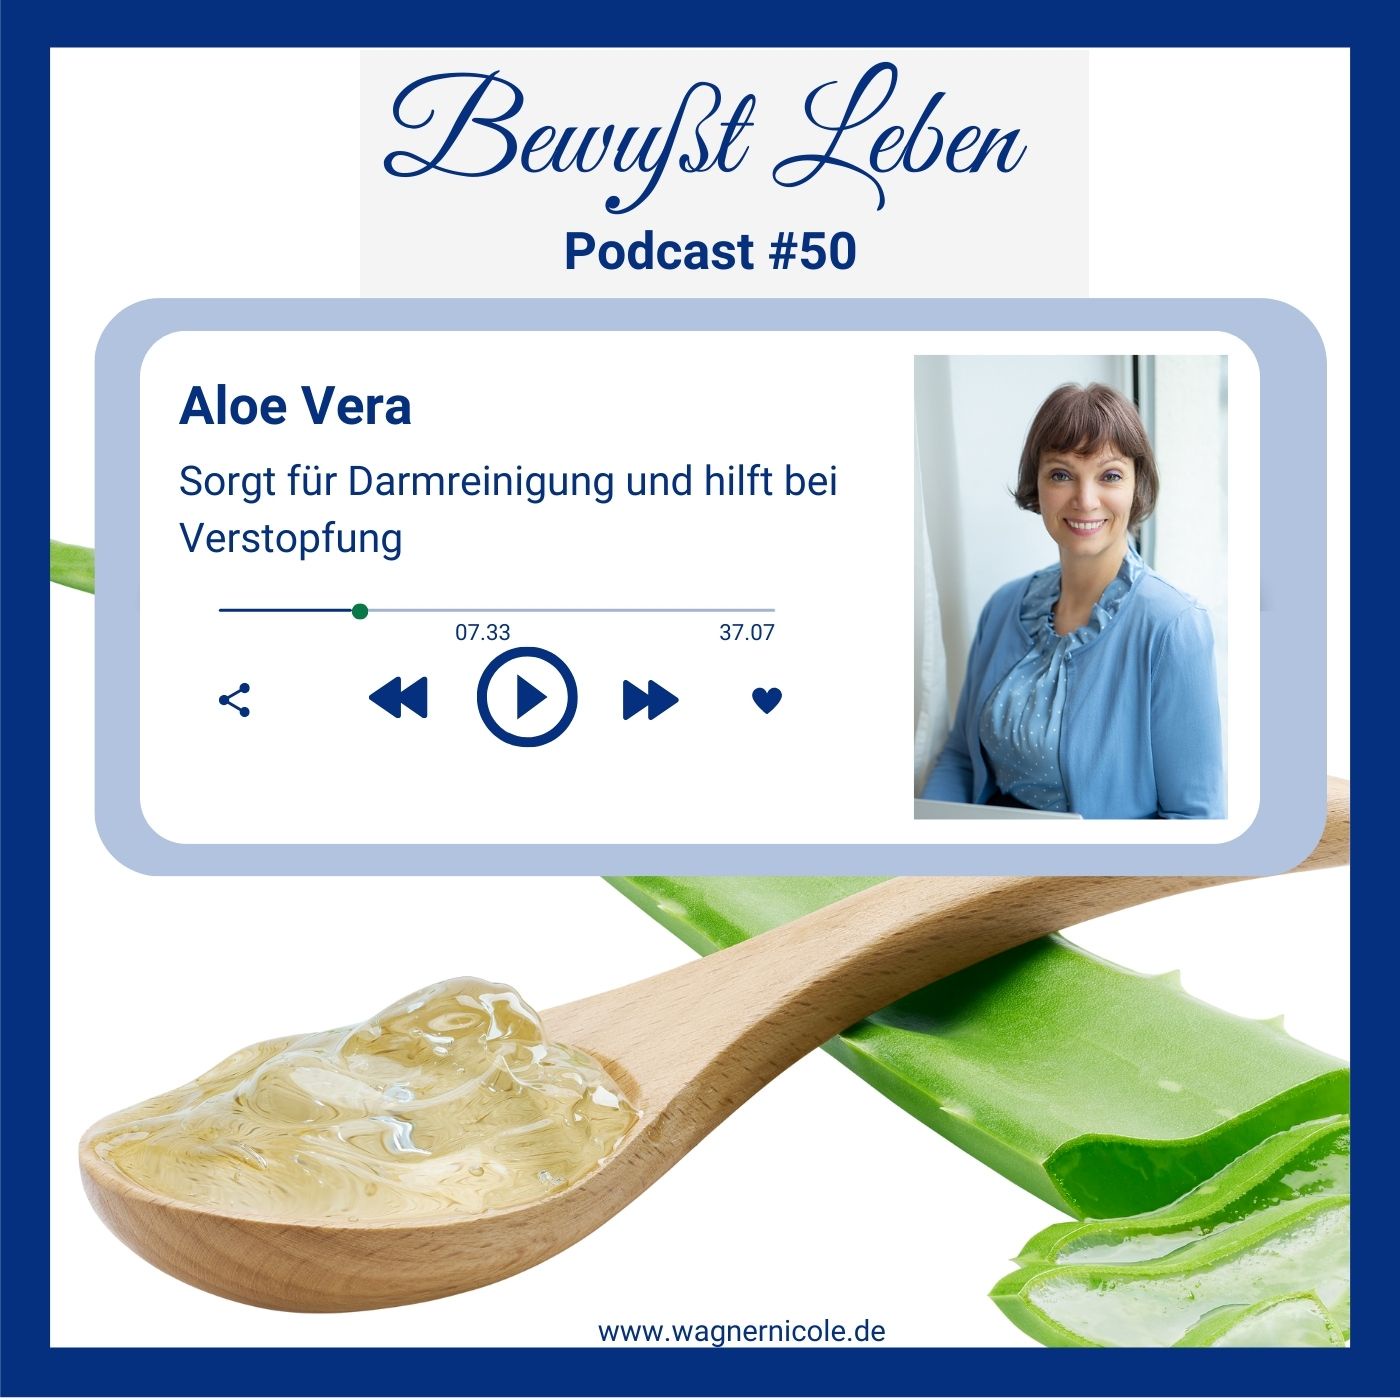 Aloe Vera sorgt für Darmreinigung und hilft bei Verstopfung I Podcast #50